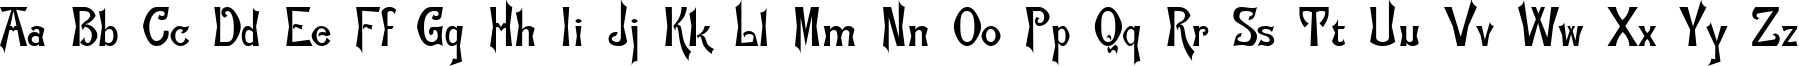 Пример написания английского алфавита шрифтом FlemishC